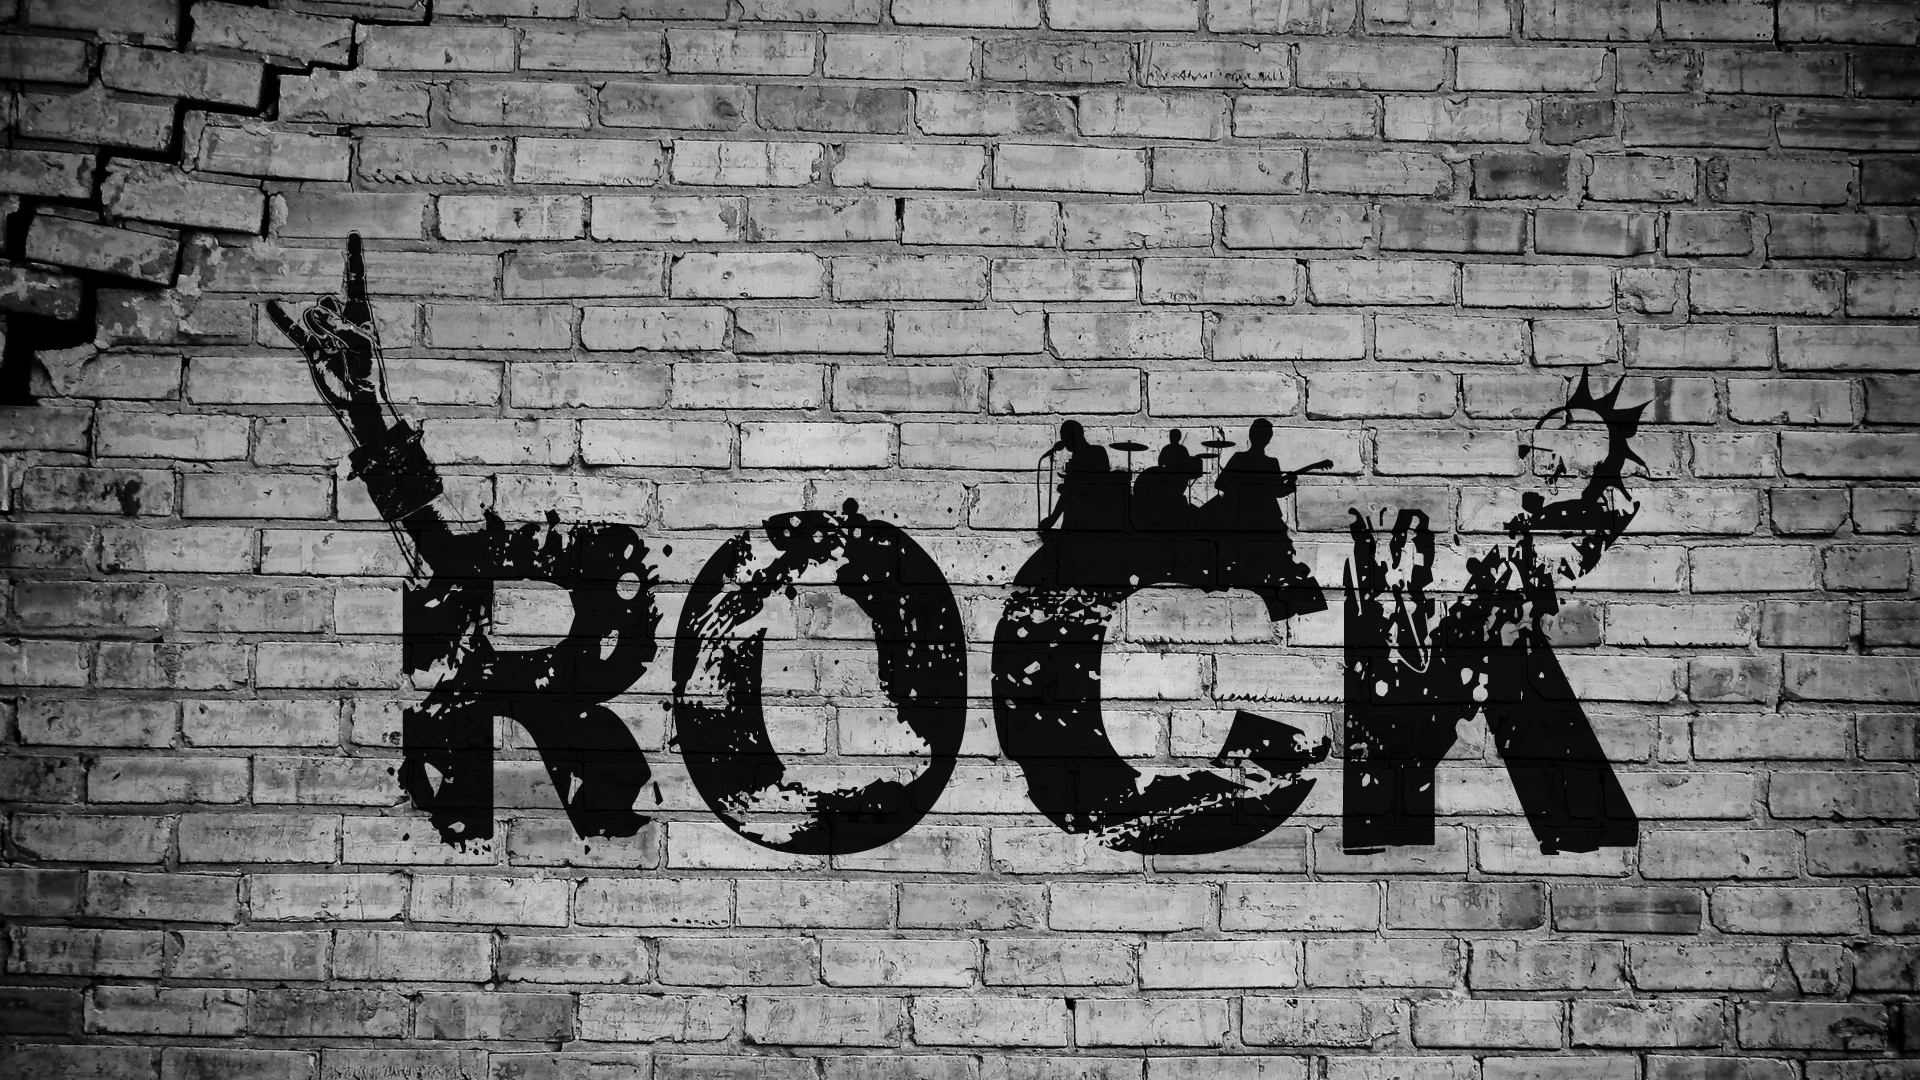 rock music wallpaper,wall,brick,font,brickwork,street art